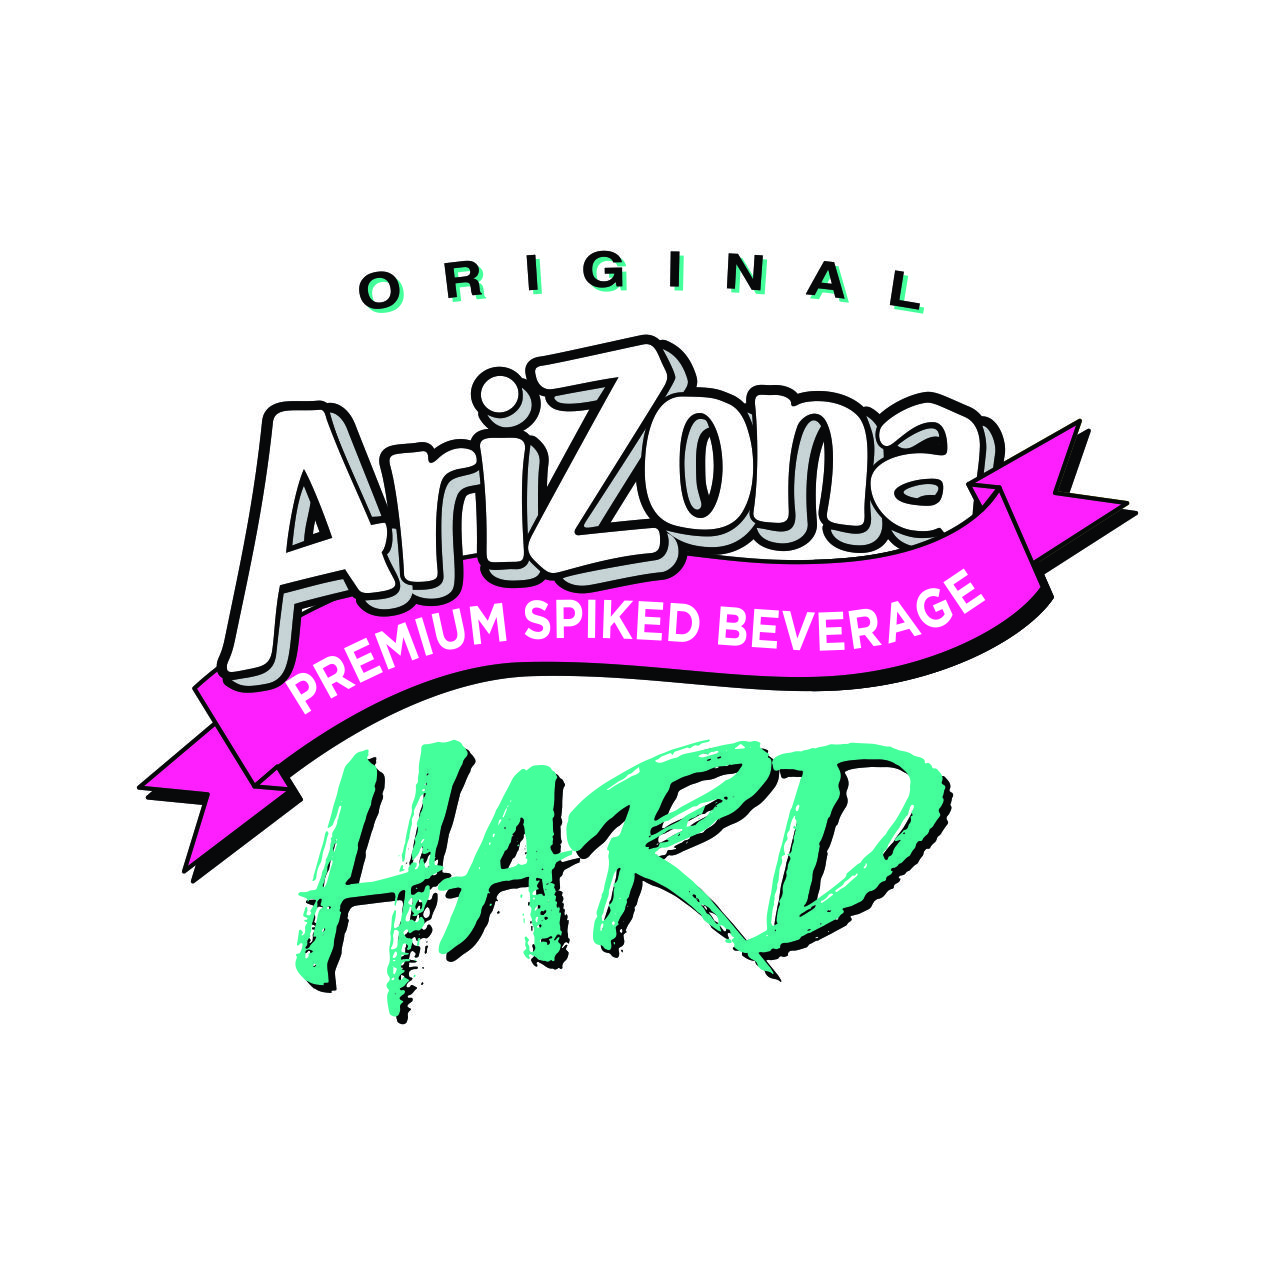 Arizona Hard